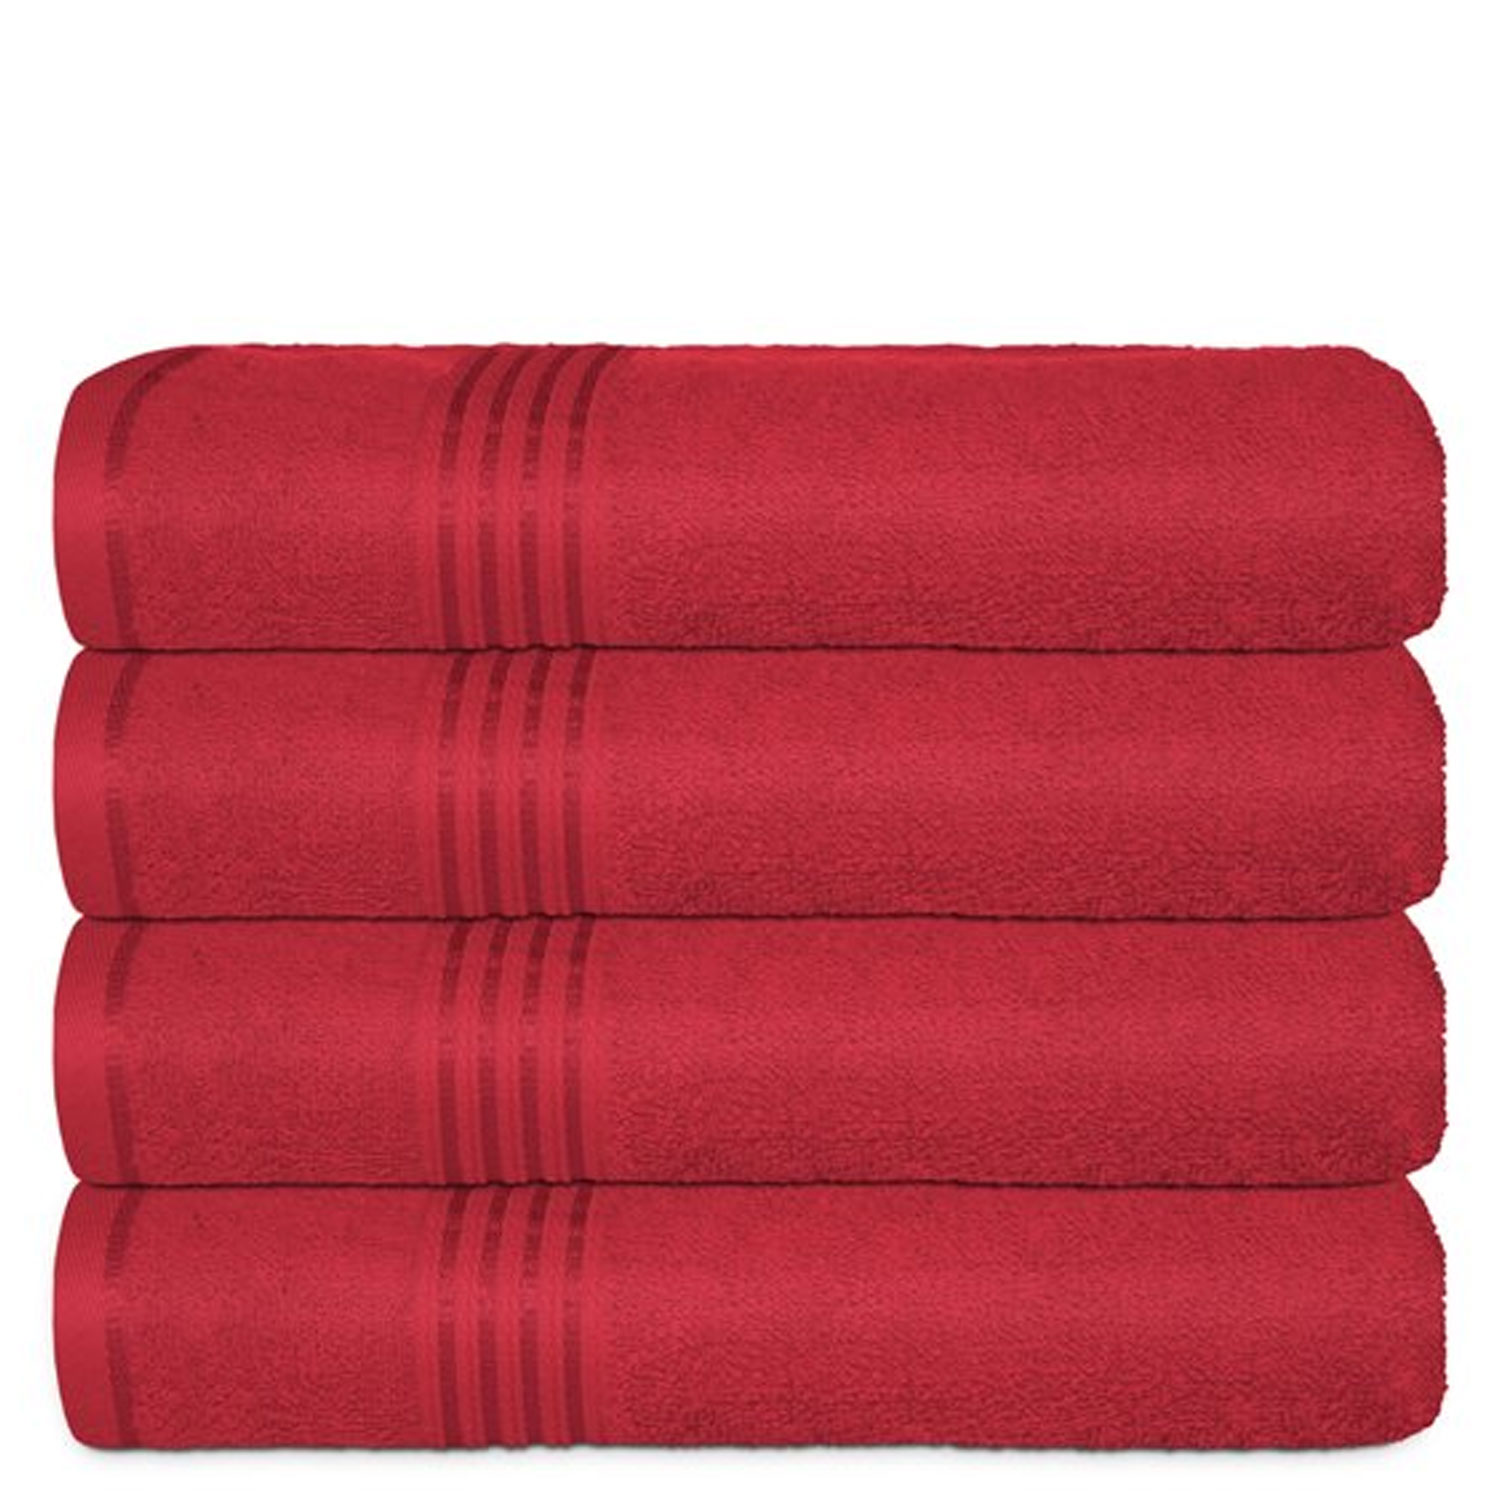 100% Cotton Bath Towel Set, 4 Piece